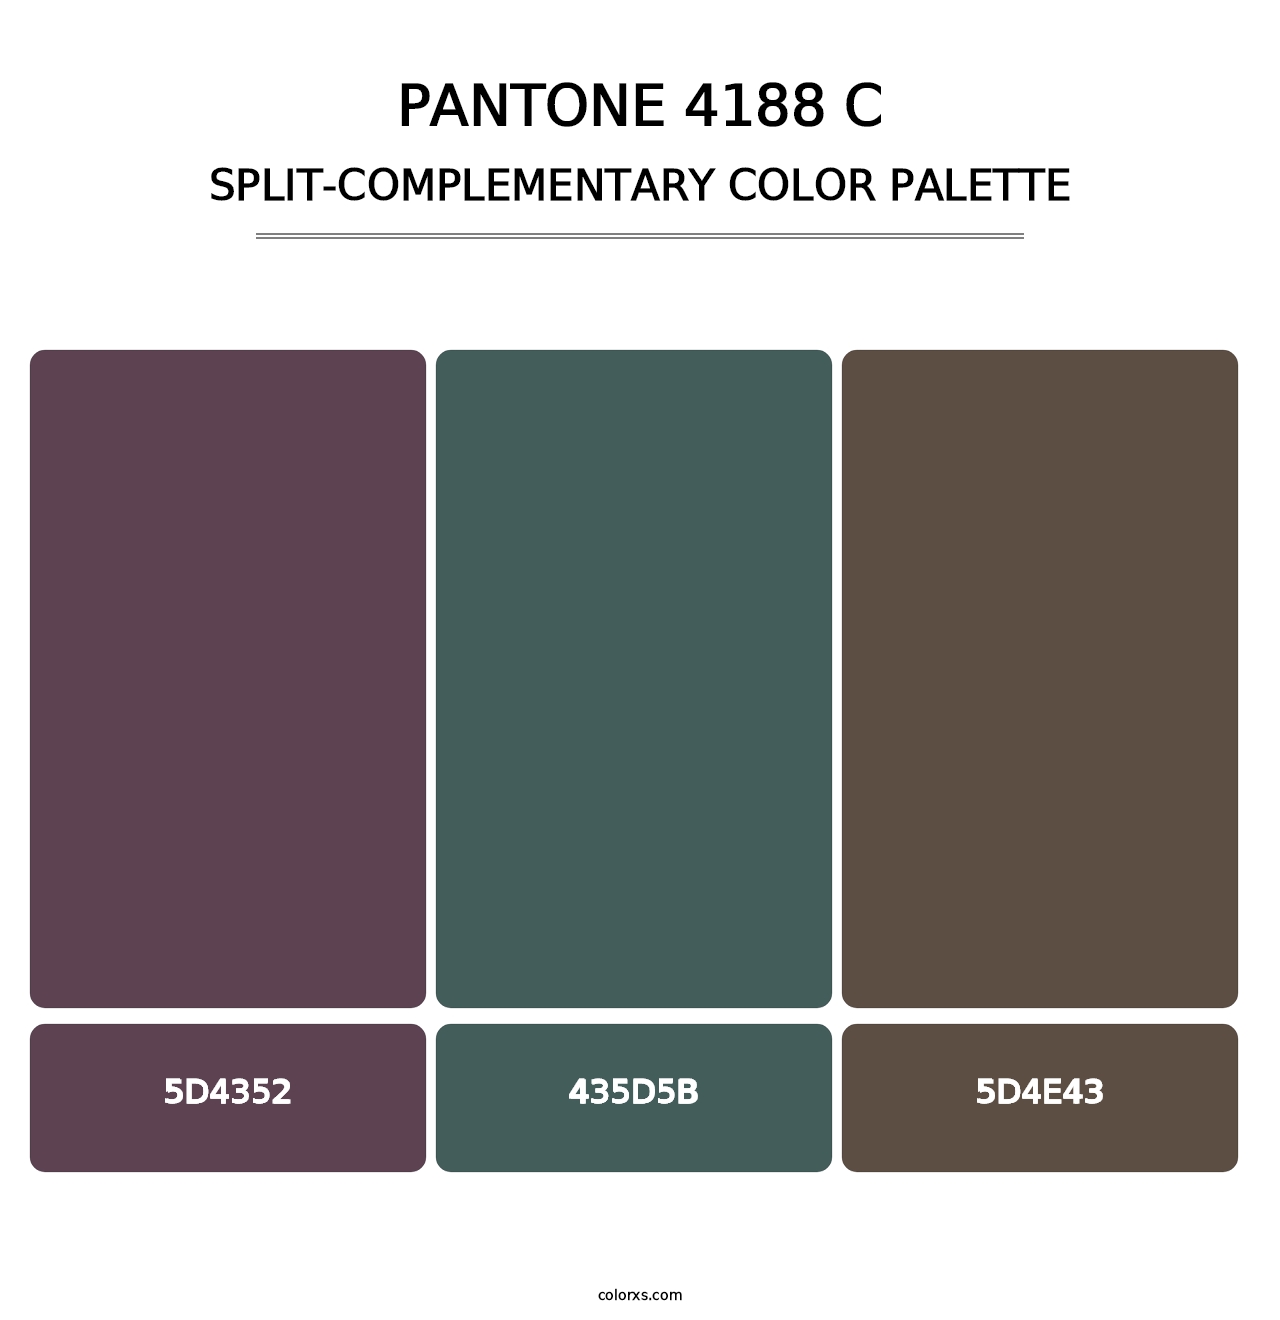 PANTONE 4188 C - Split-Complementary Color Palette